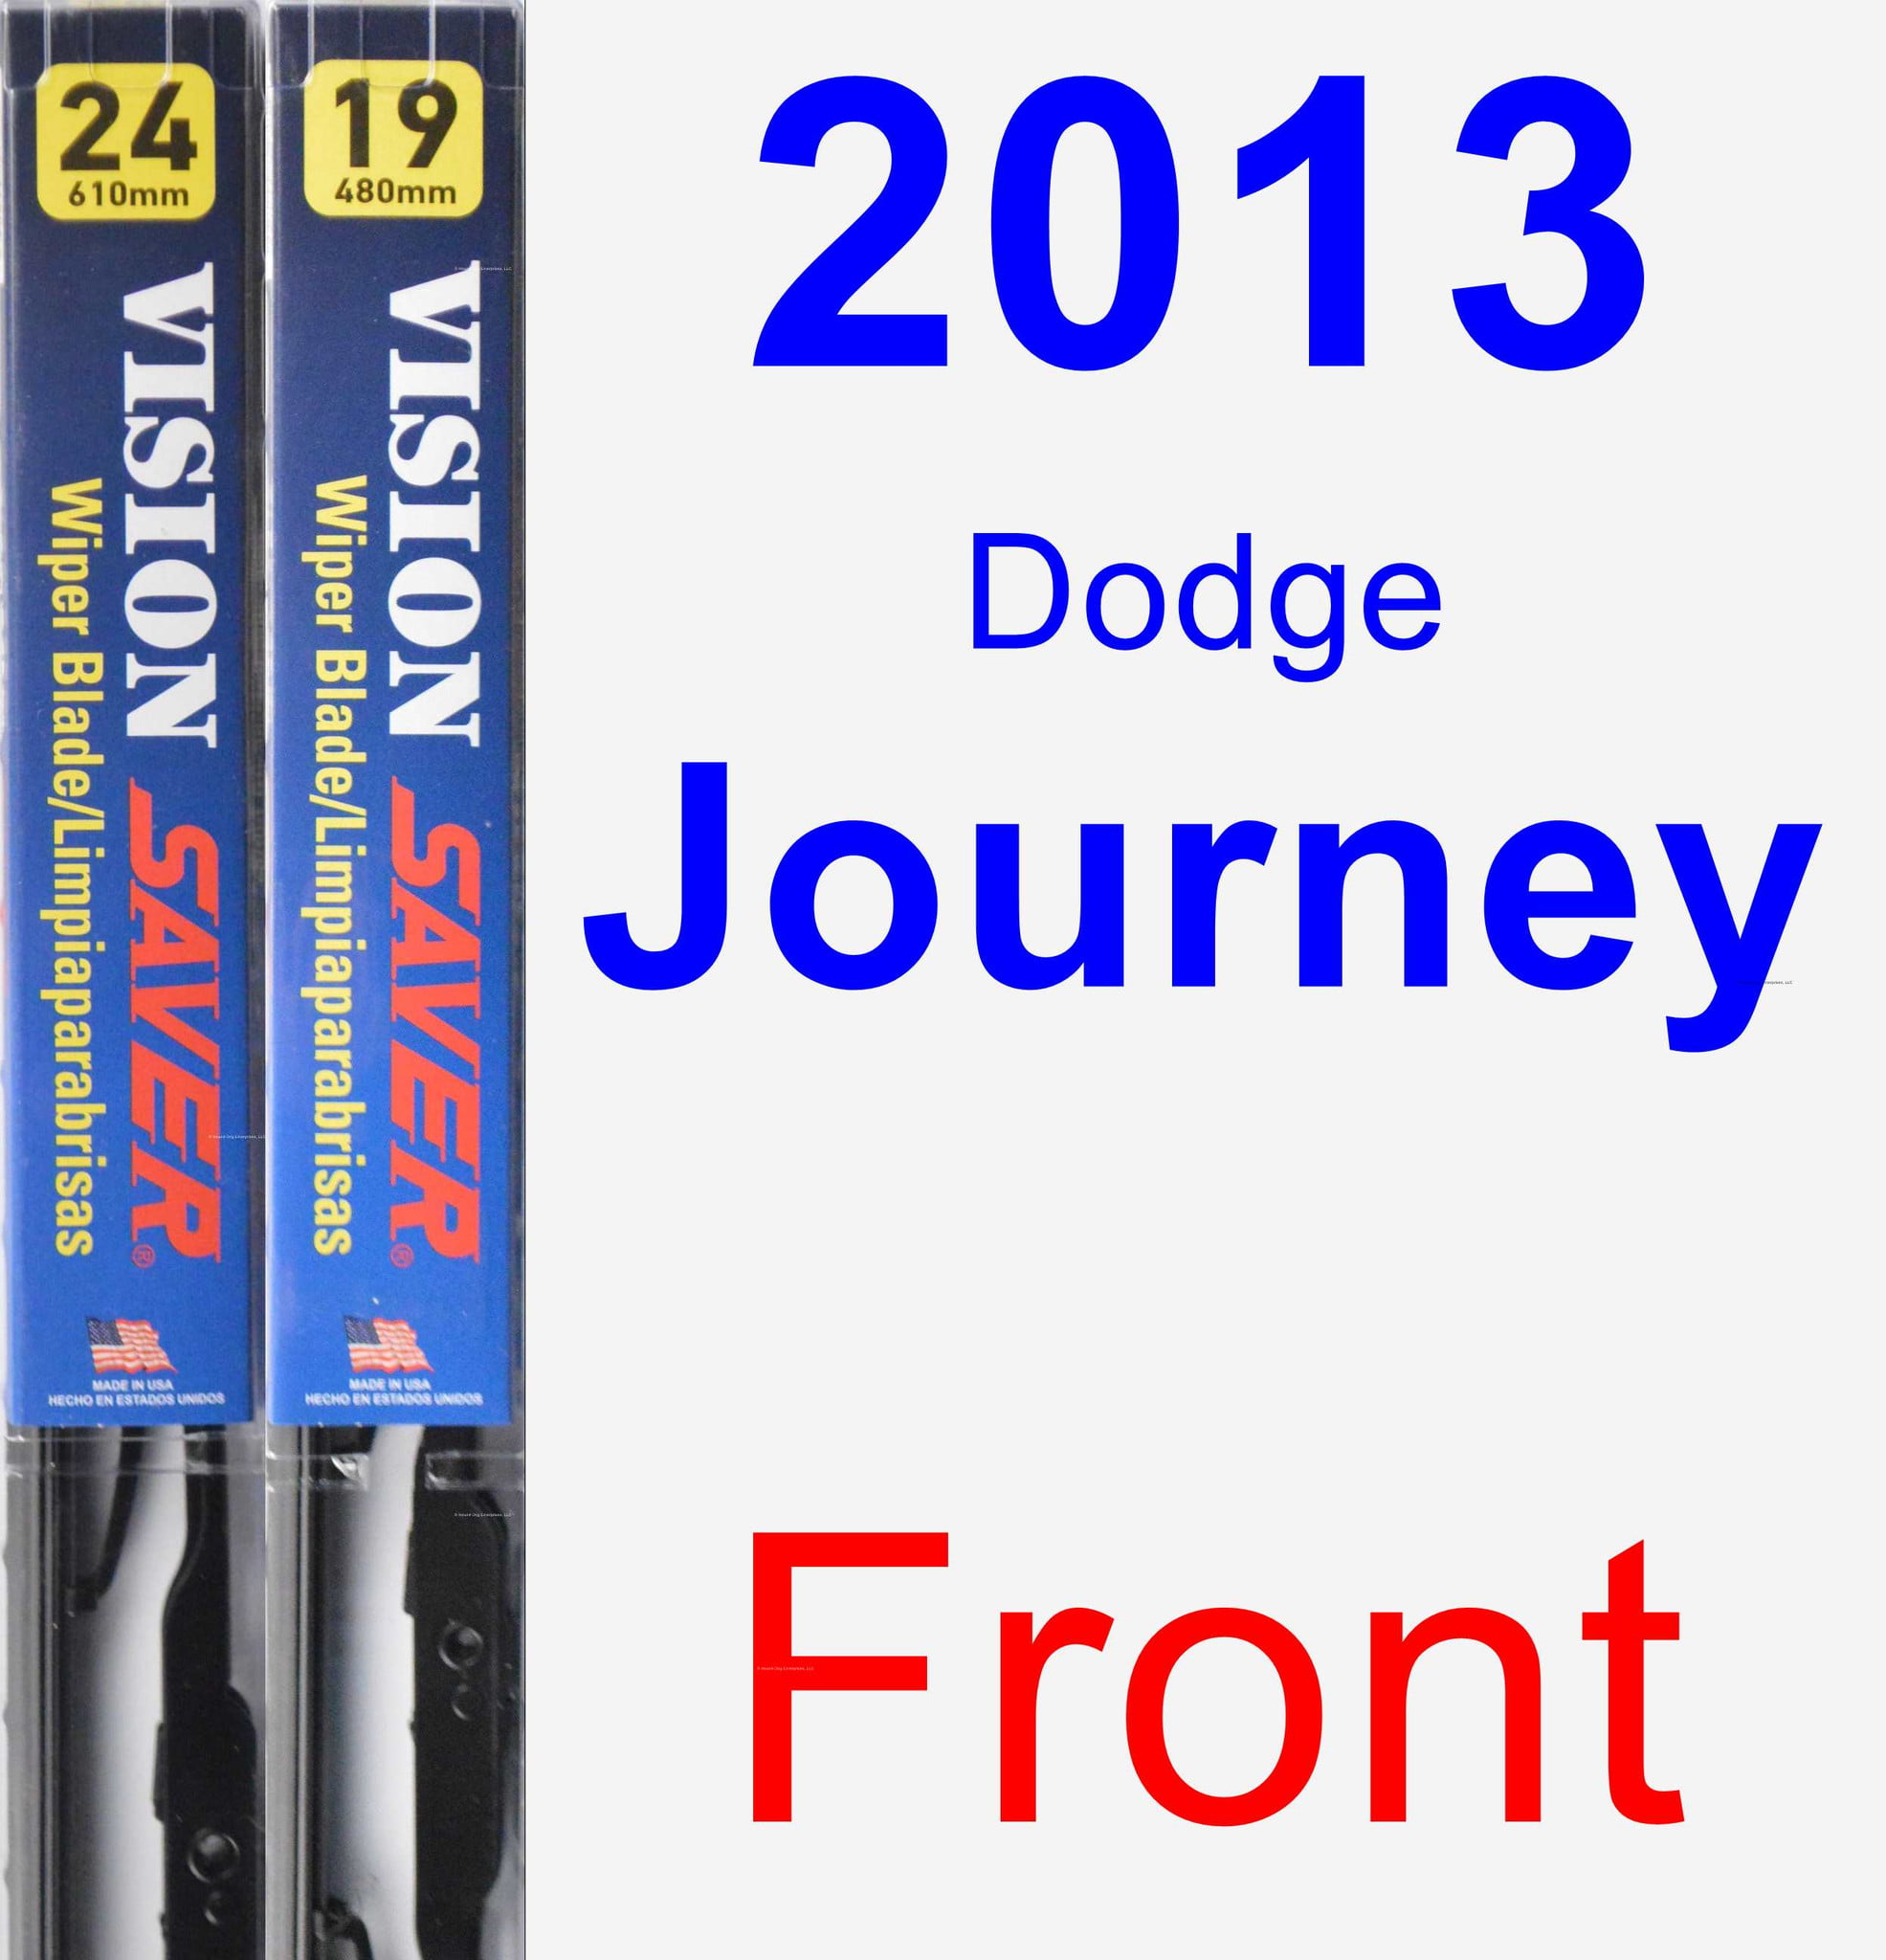 2013 dodge journey wiper blades